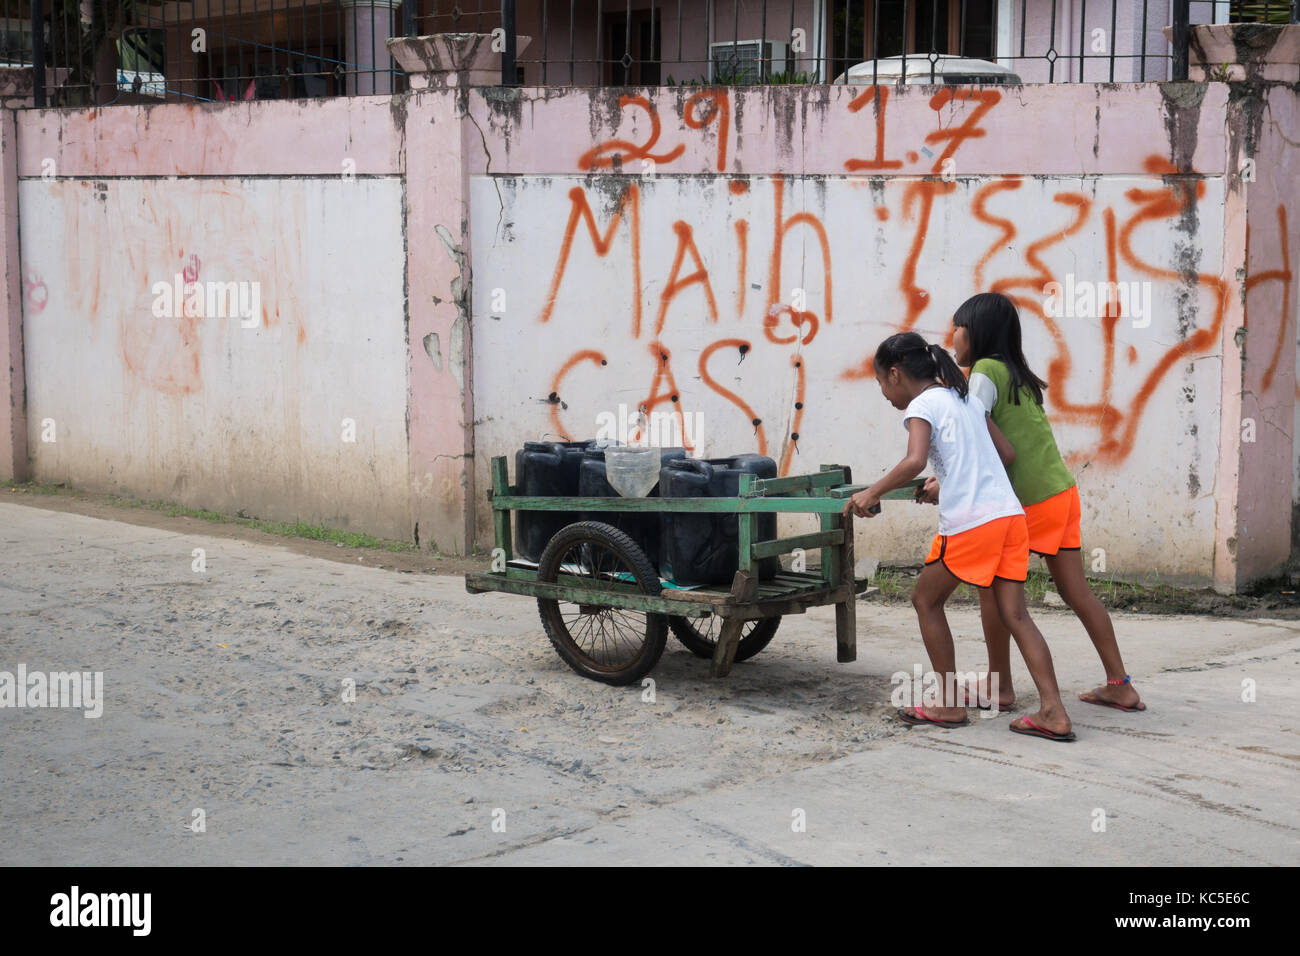 Lavoro minorile - Bambini che lavorano a Cebu City, Cebu, Filippine, Asia Foto Stock